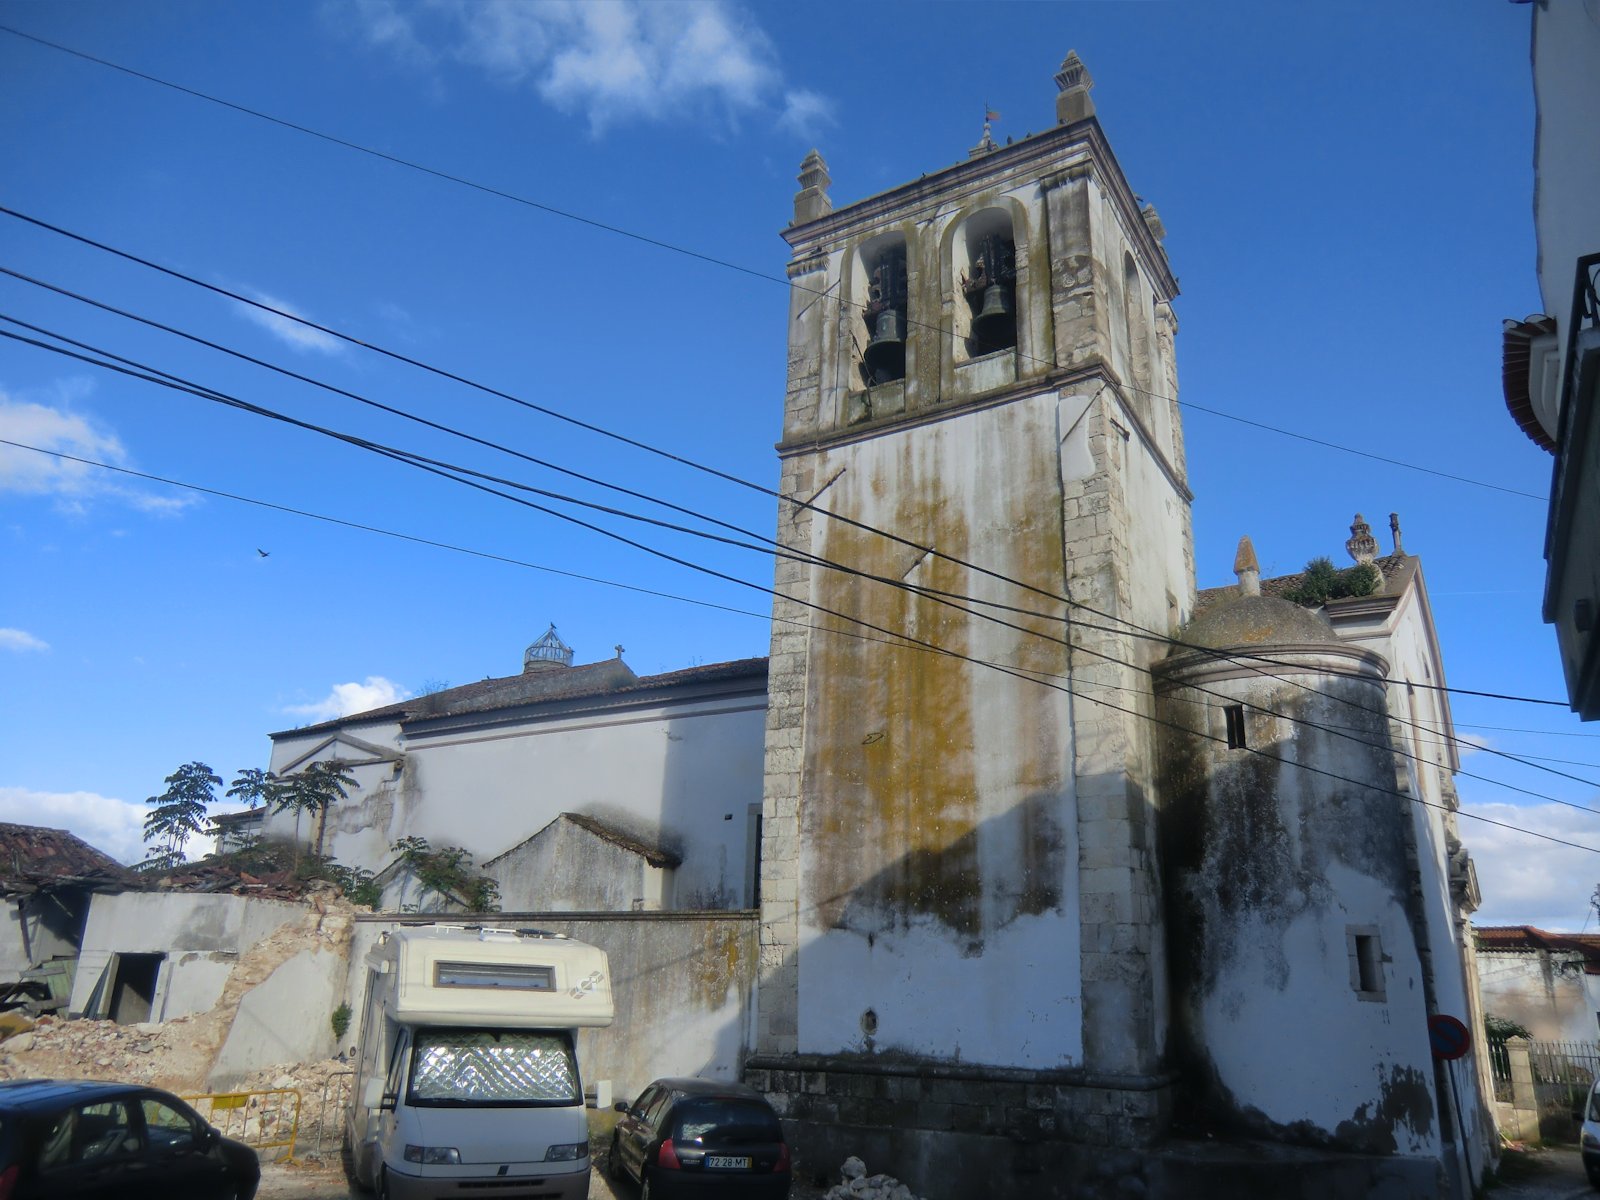 Kirche Santa Iria de Ribeira - „heilige Irene vom Fluss” - in Santarém, nach der maurischen Besetzung im 12. Jahrhundert erbaut, 1688 erneuert, wegen Baufälligkeit geschlossen, die Renovierung ist seit längerem beabsichtigt